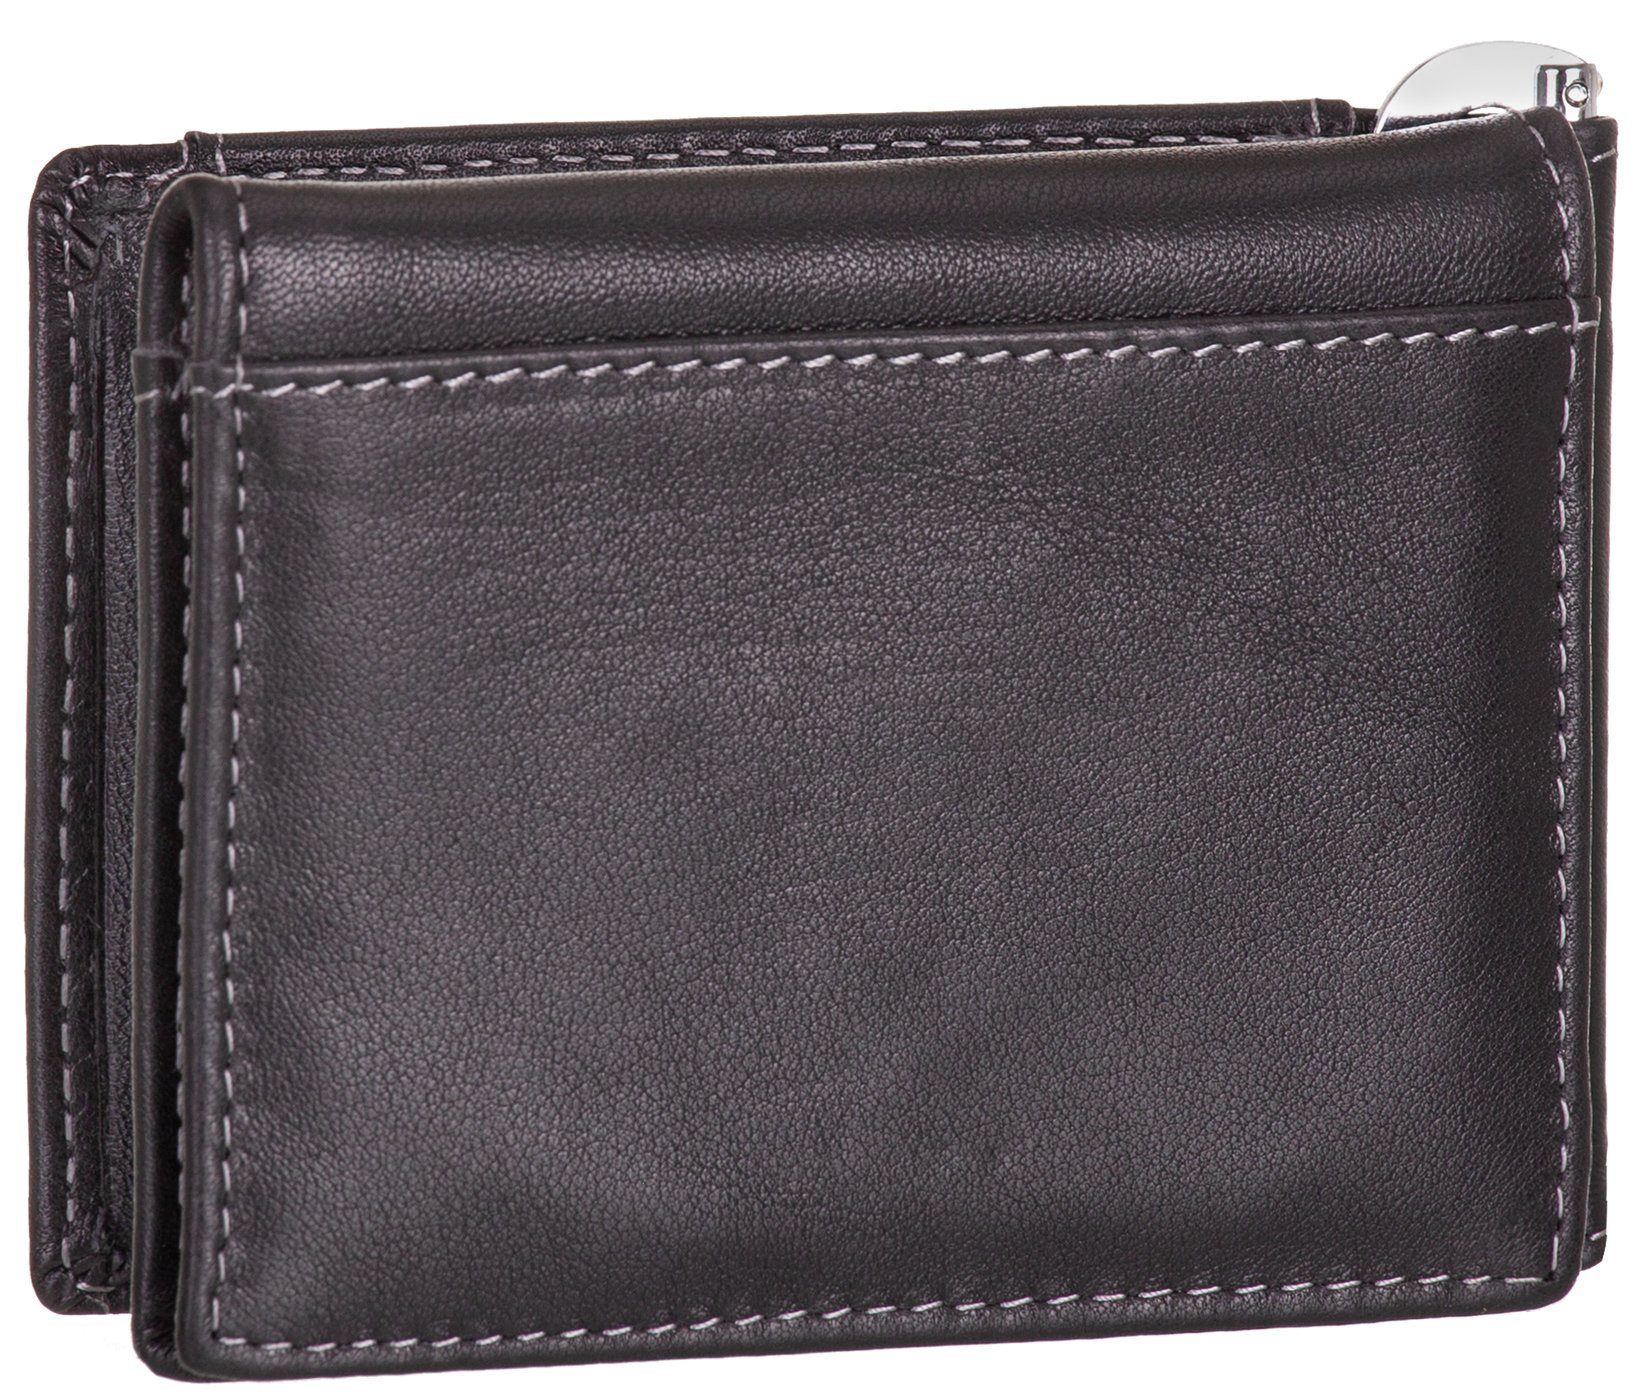 BAG STREET Geldbörse, schwarz Leder RFID-Schutz Münzfach mit Geldclip Geldbeutel Echt Portemonnaie Geldklammer